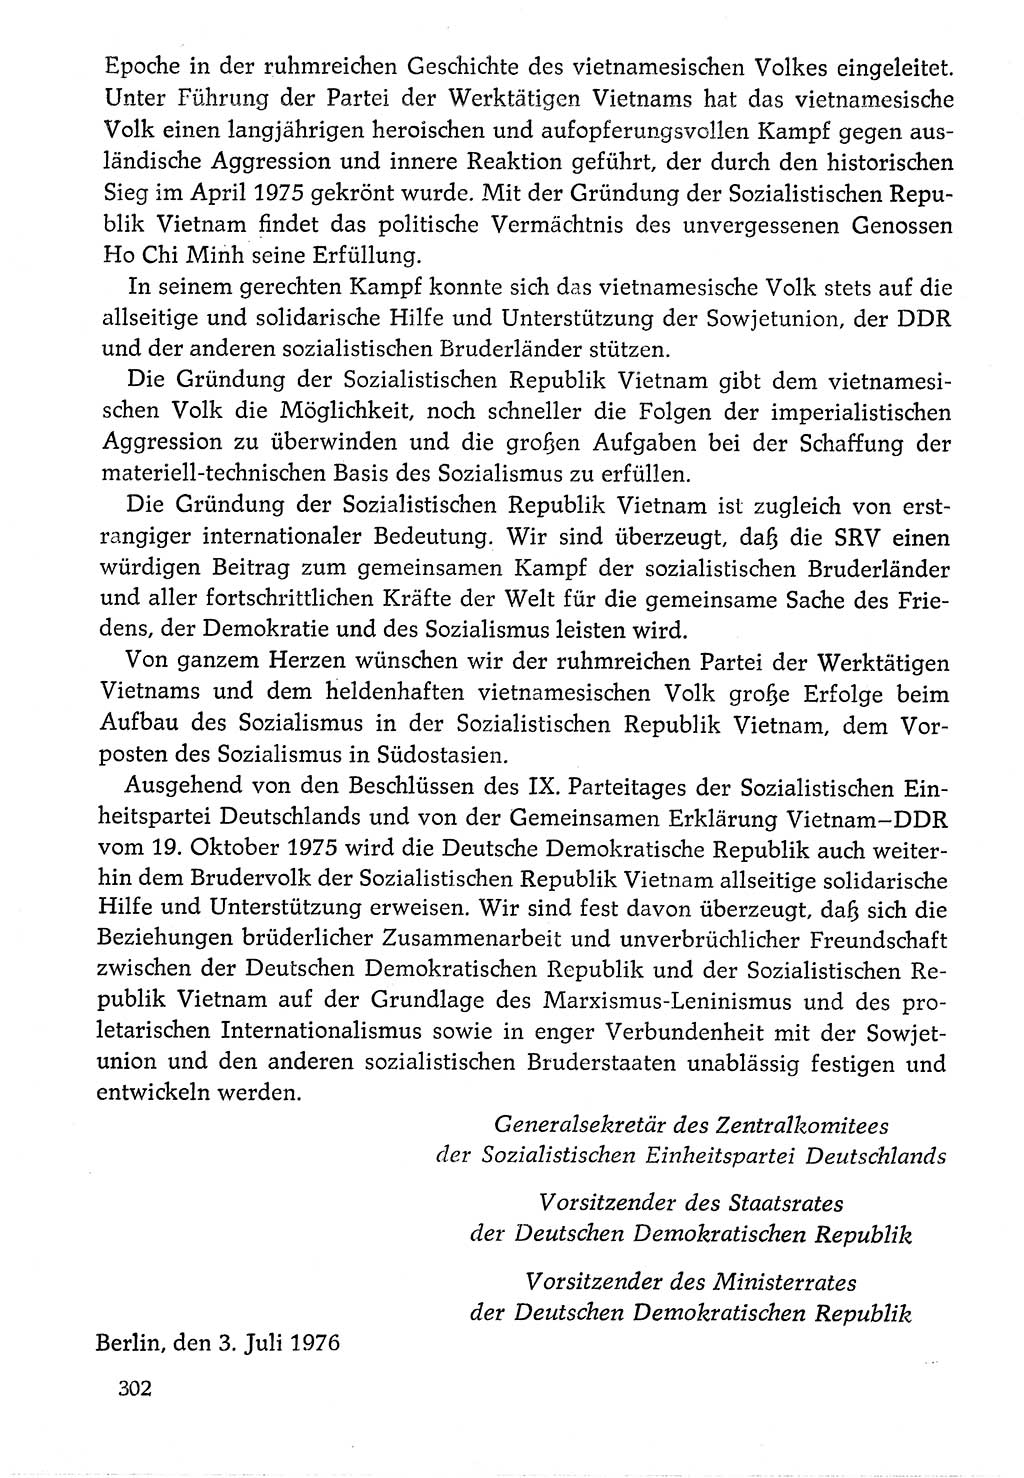 Dokumente der Sozialistischen Einheitspartei Deutschlands (SED) [Deutsche Demokratische Republik (DDR)] 1976-1977, Seite 302 (Dok. SED DDR 1976-1977, S. 302)